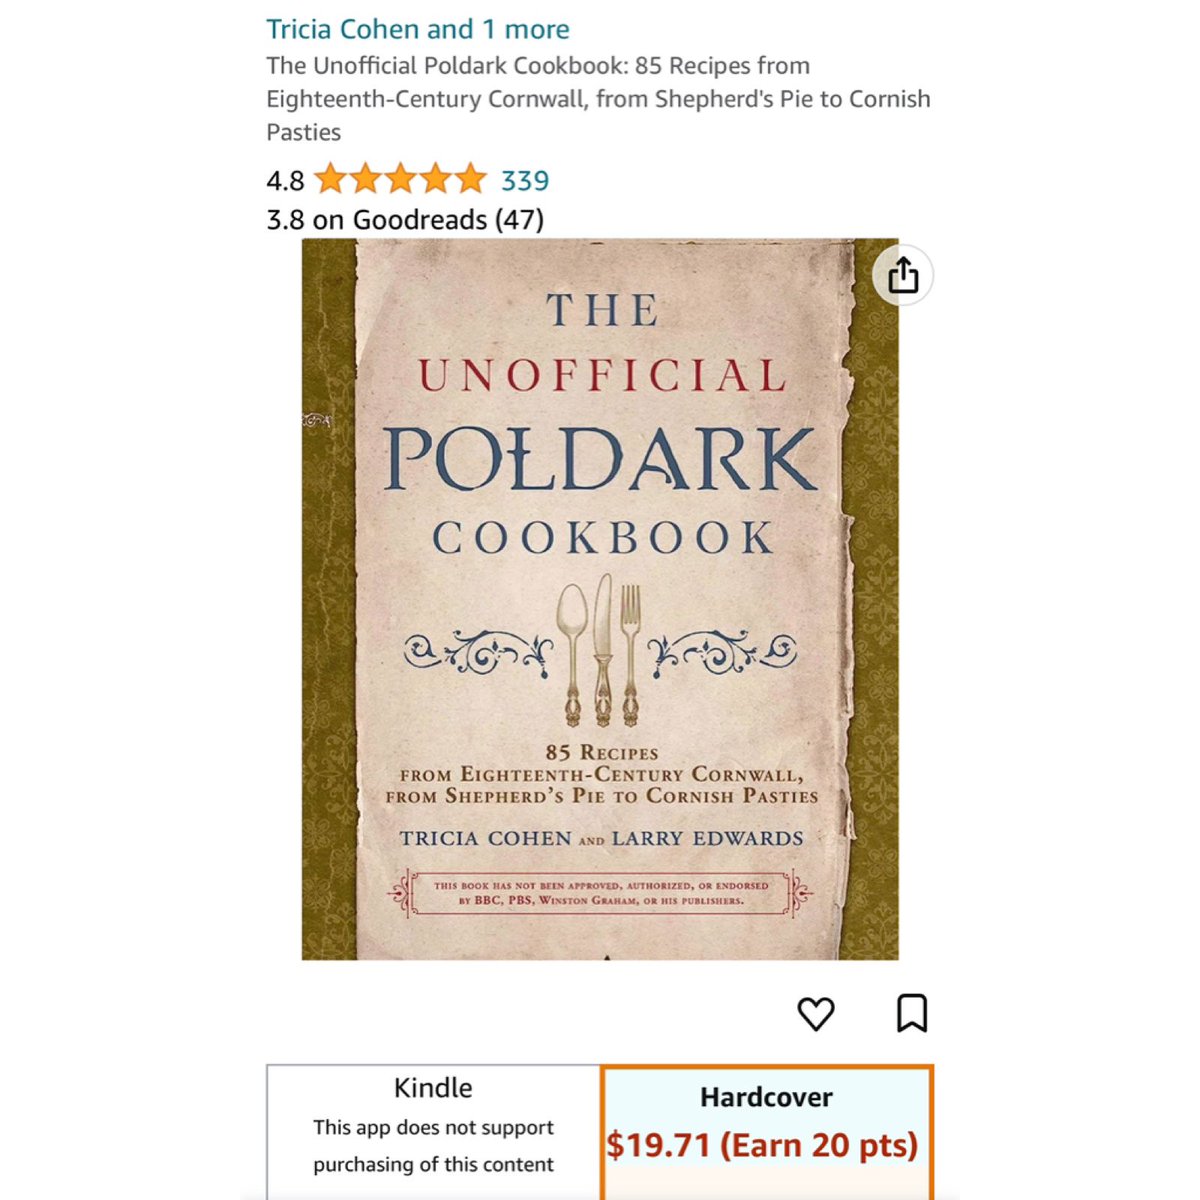 Found The Unofficial Poldark Cookbook on Amazon

#Poldark #18thCentury #Cornwall #Cookbook #Amazon